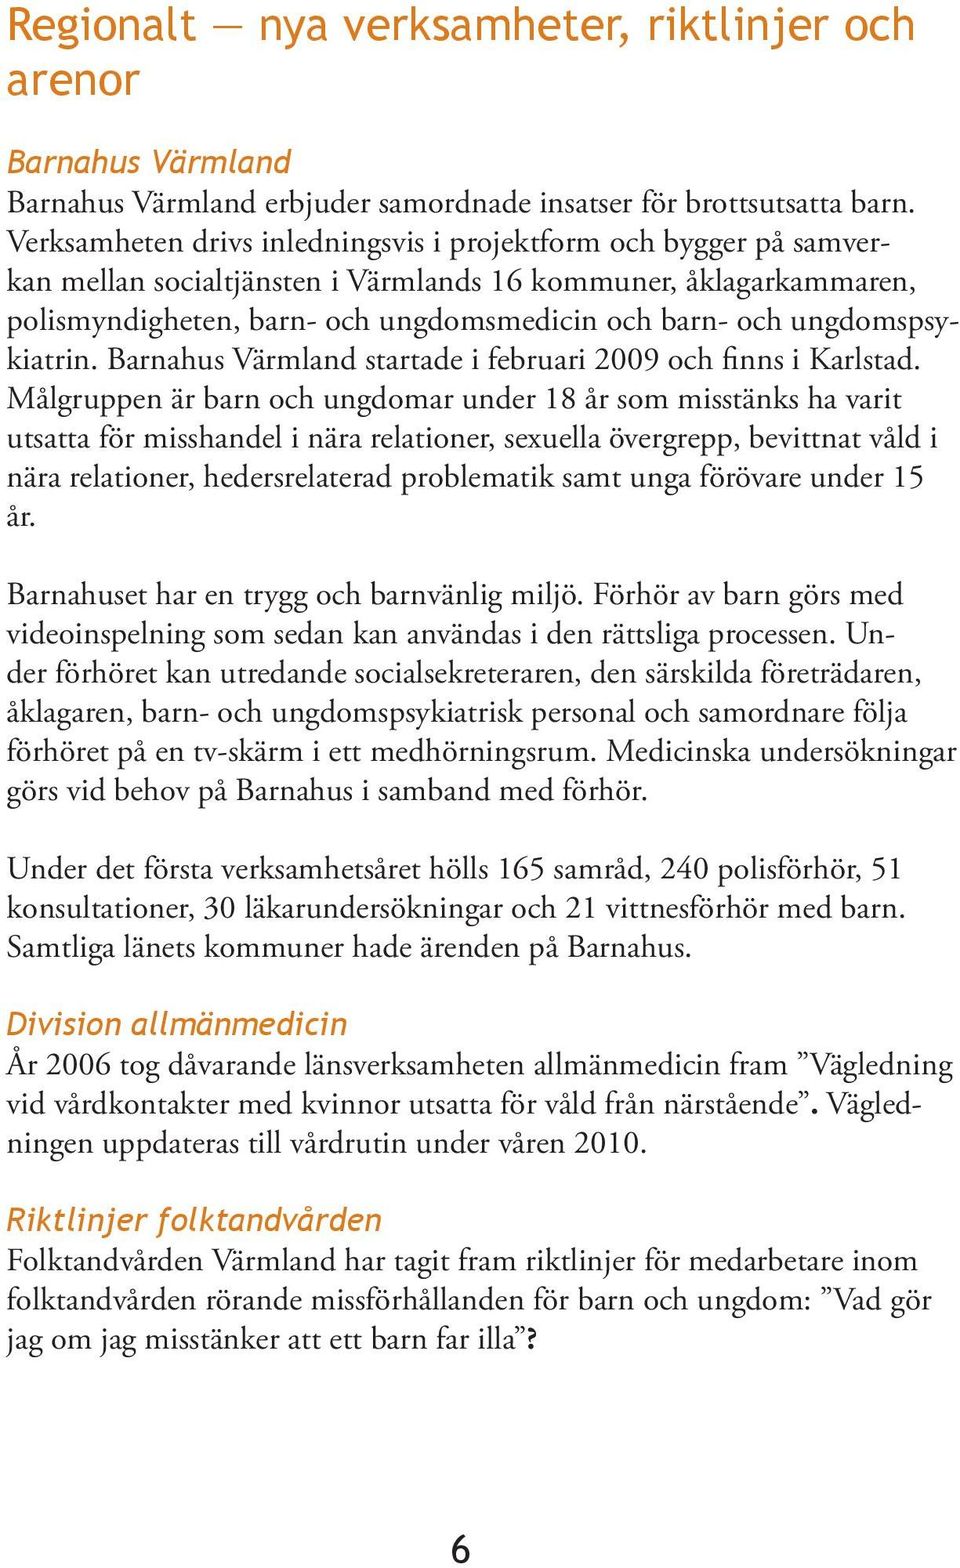 ungdomspsykiatrin. Barnahus Värmland startade i februari 2009 och finns i Karlstad.